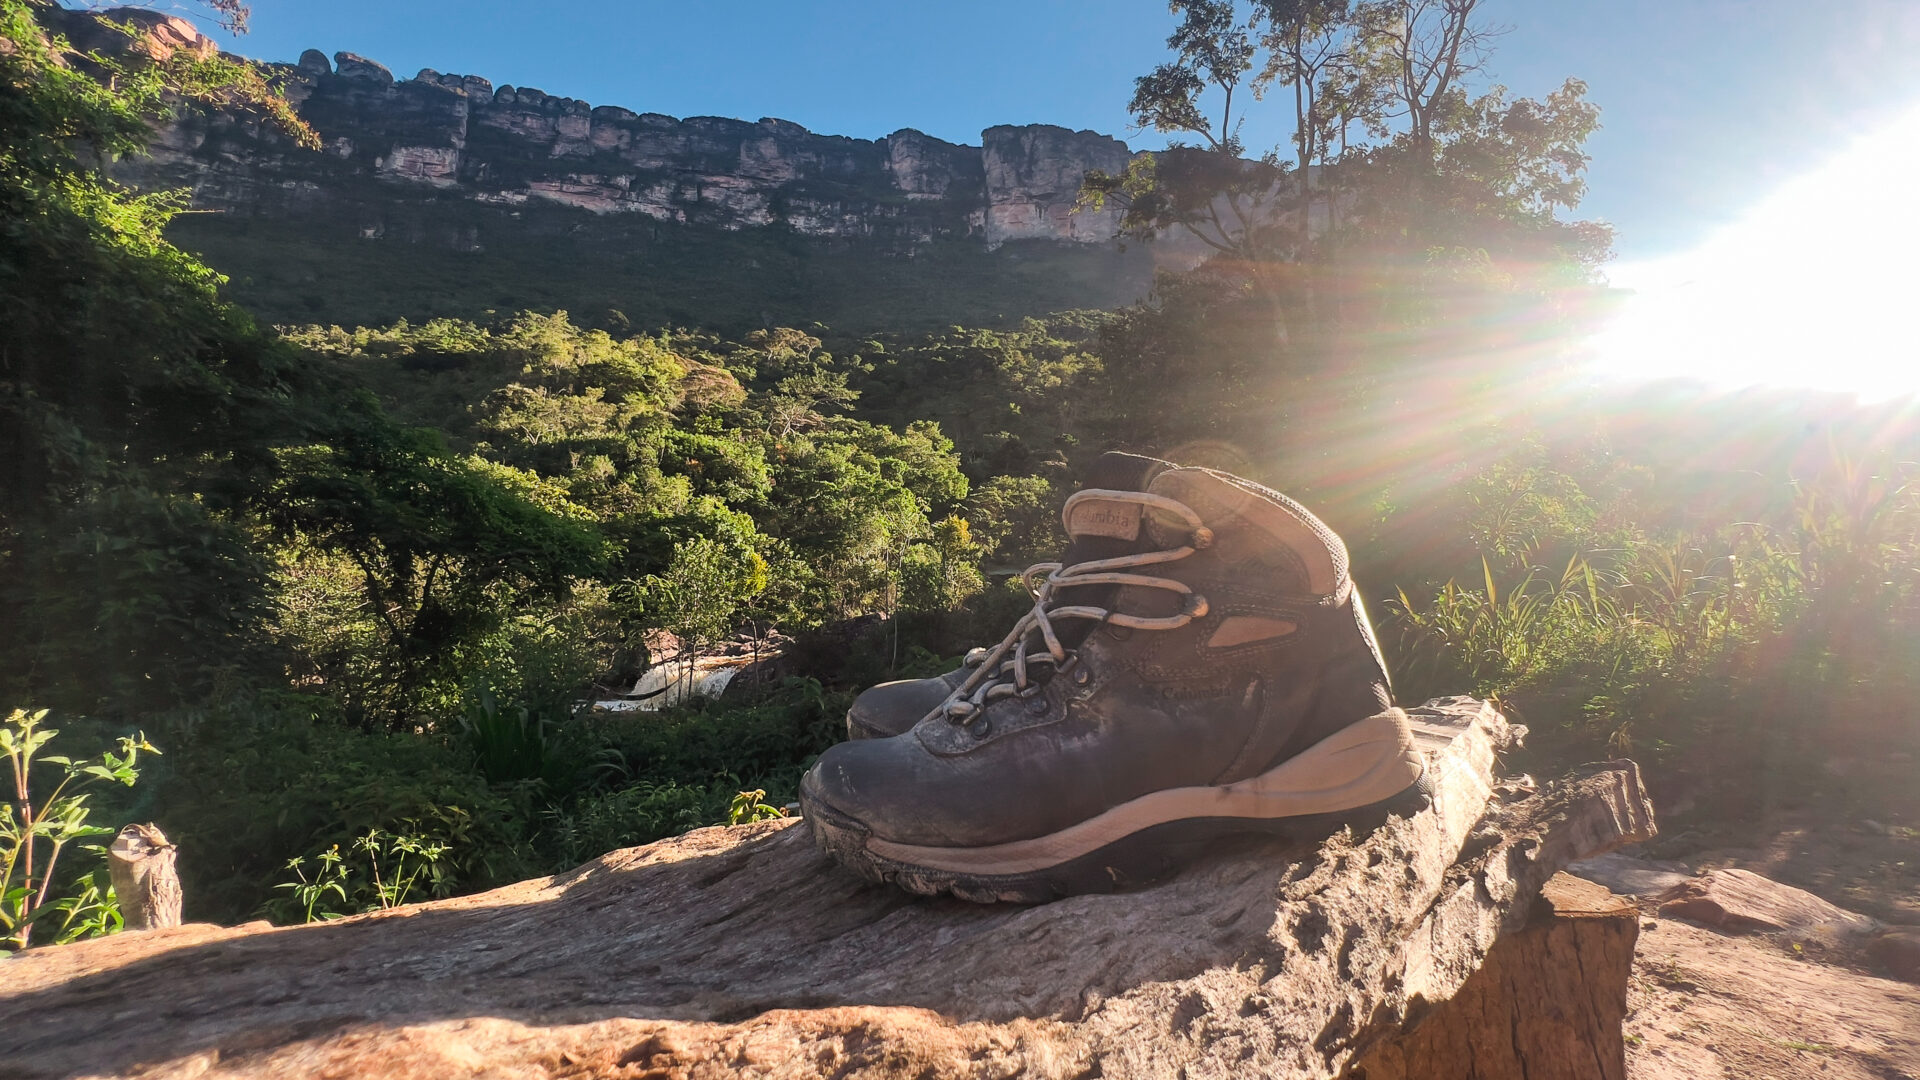 Saiba como escolher os melhores calçados para trilha: tênis ou bota? qual usar em cada trajeto?